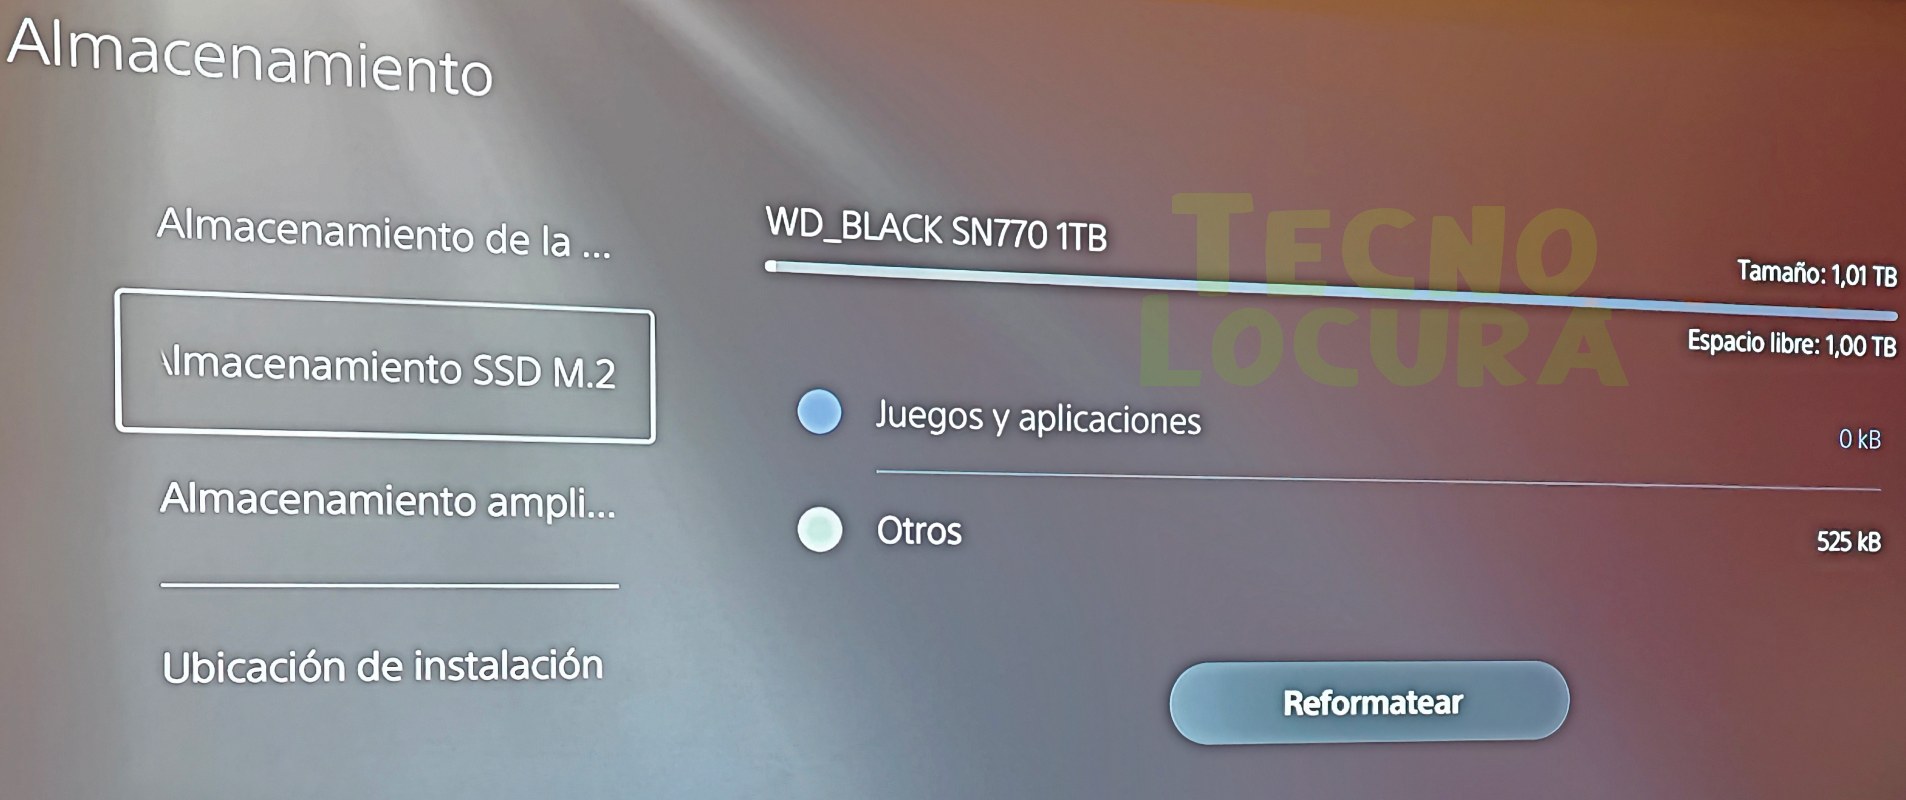 WD_BLACK SN770 PRUEBAS TECNOLOCURA PS5